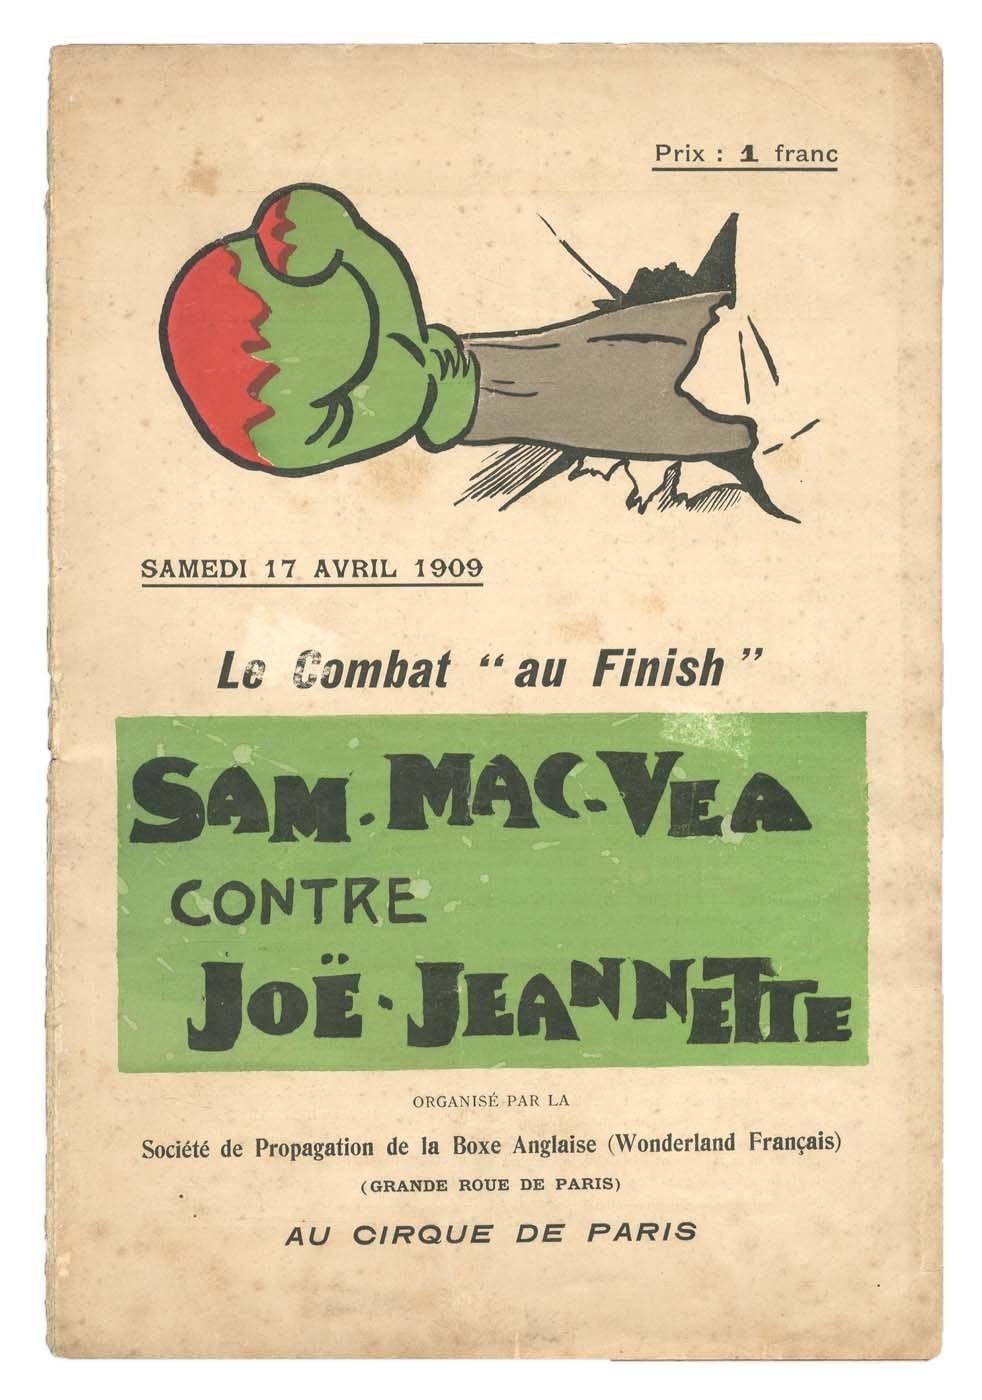 - Sam McVea v. Joe Jeannette Official Program (1909)